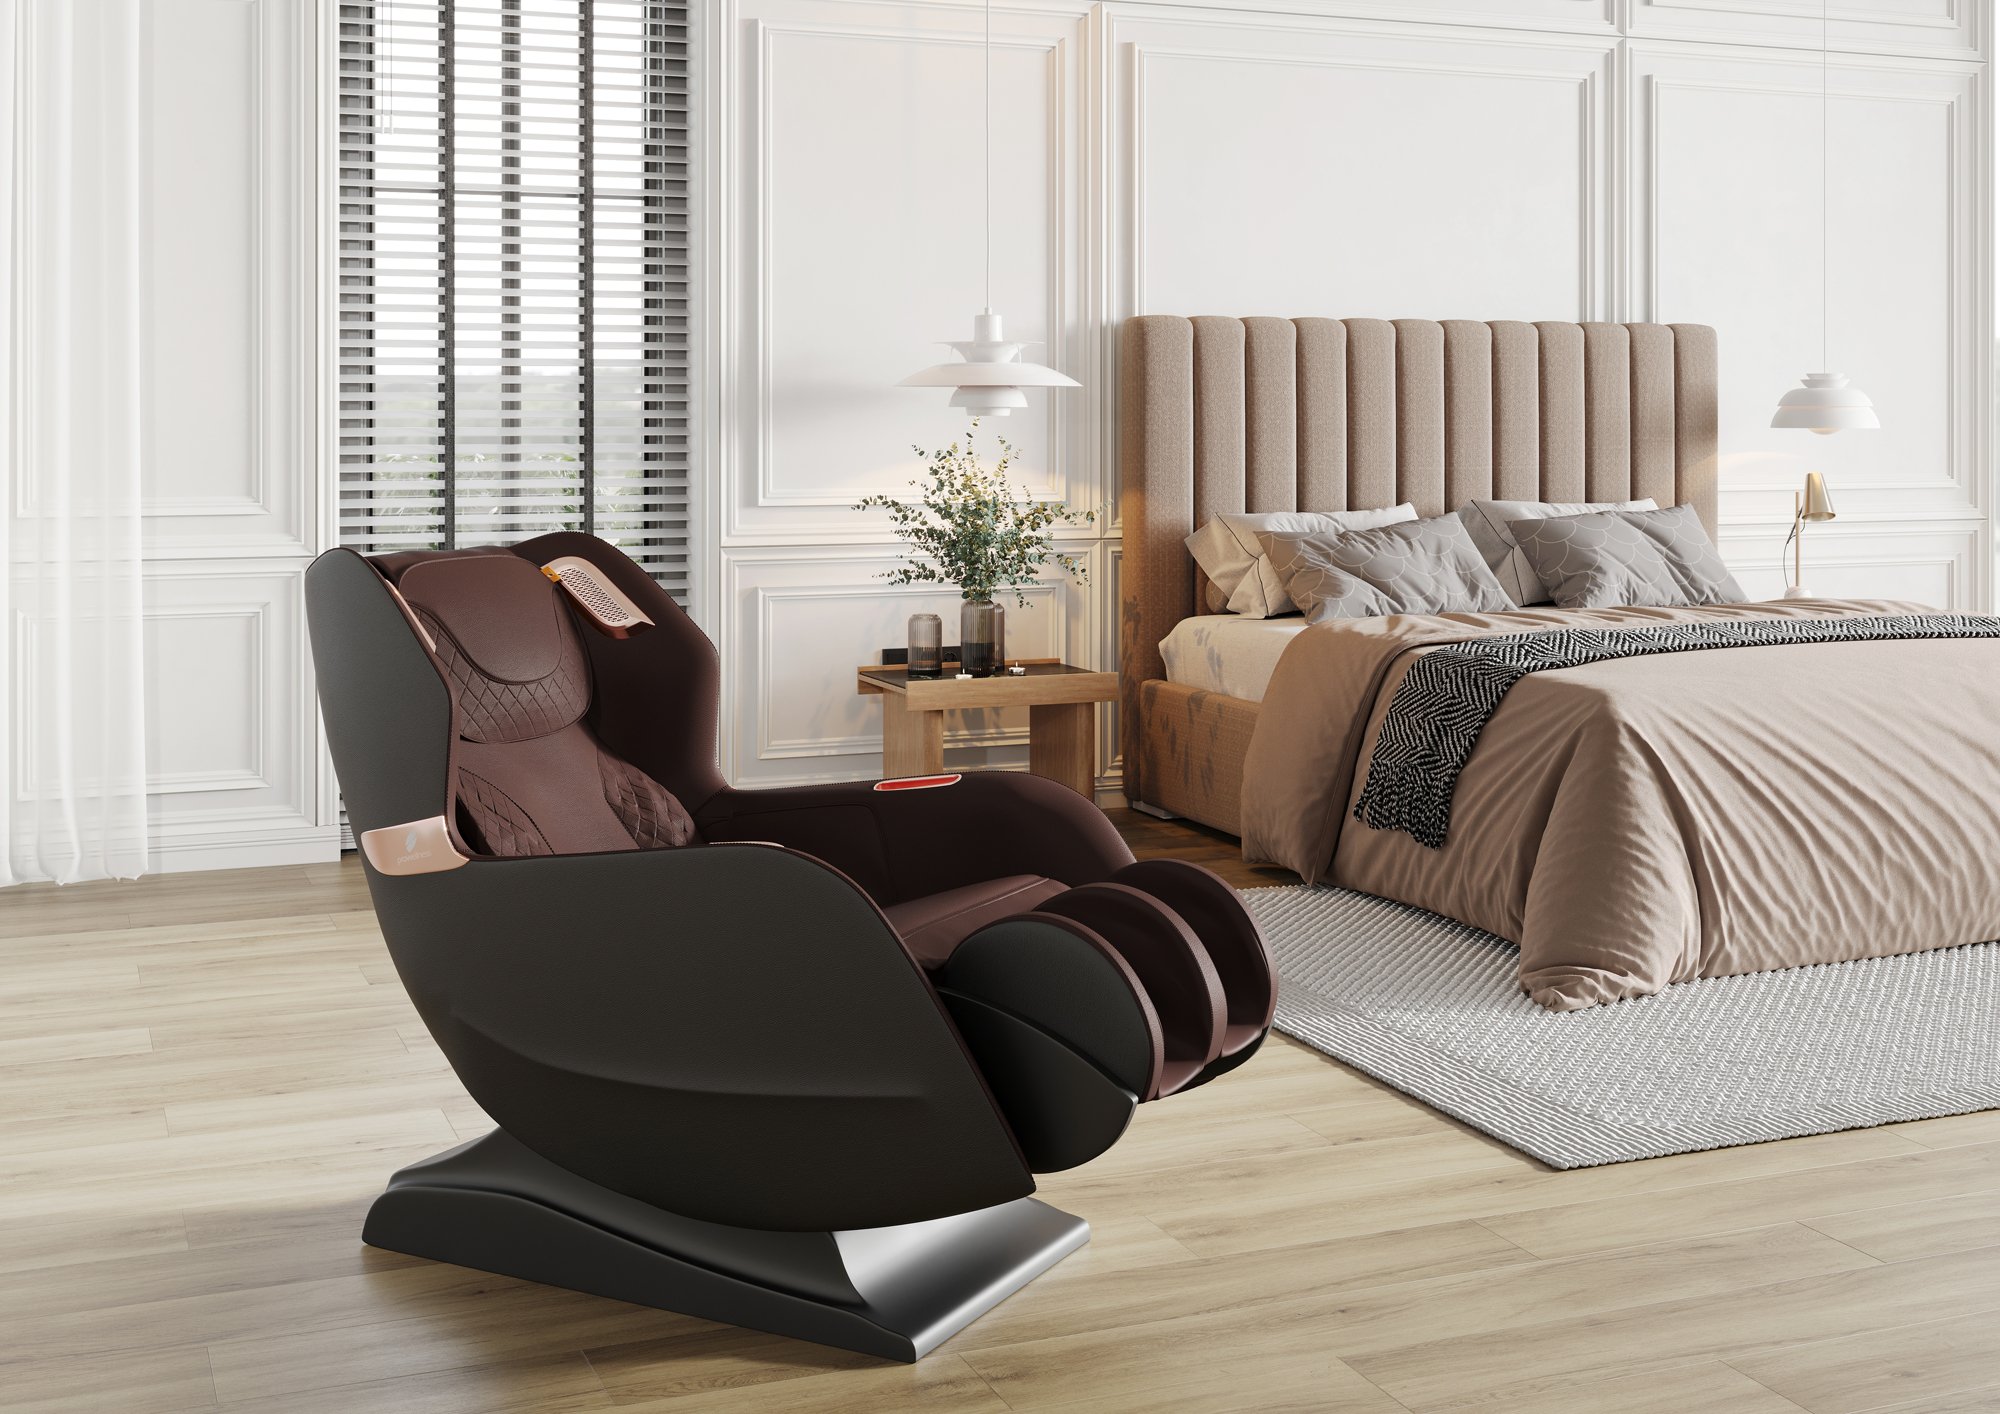 PW430 wirtualna sesja w aranżacji  Model 3D fotela masującego w pozycji rozłożonej Massage chair 3D model.jpg